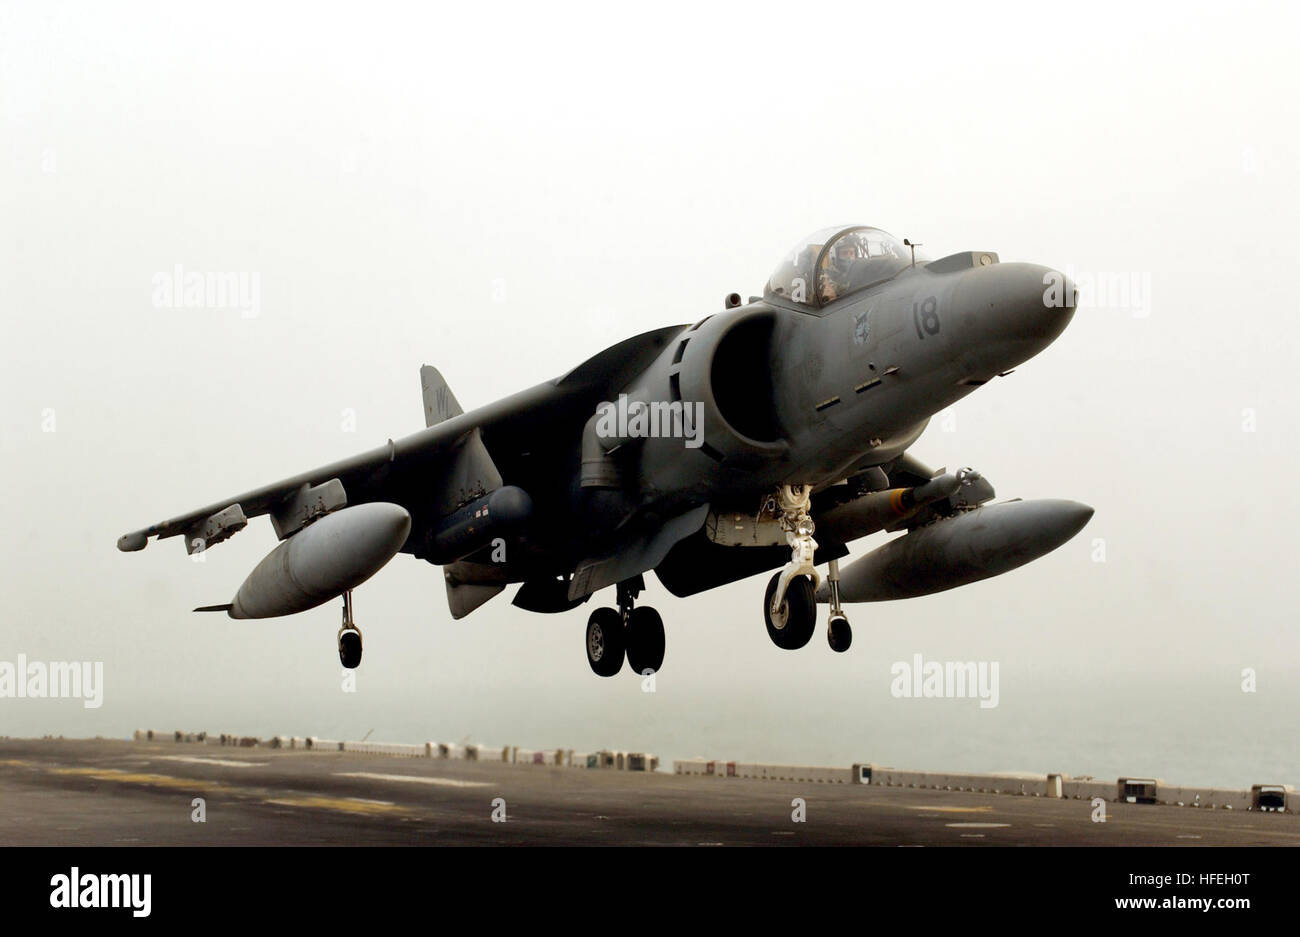 030321-N-1665B-015 Golfo Arábigo (Mar. 21, 2003) -- un Marine AV-8B Harrier hace un aterrizaje vertical a bordo del buque de asalto anfibio USS Bonhomme Richard (LHD 6) después de apoyar las operaciones de combate en el suelo marino en el sur de Iraq. Bonhomme Richard y su embarcado Harrier están en el área de responsabilidad del Comando Central la realización de operaciones de combate en apoyo de la Operación Libertad Iraquí. Navy photo by Mate del fotógrafo Aerotécnico de reclutar Staci Bitzer. (Liberado) US Navy 030321-N-1665B-015 una Marina AV-8B Harrier hace un aterrizaje vertical a bordo del buque de asalto anfibio USS Bonhomme rico Foto de stock